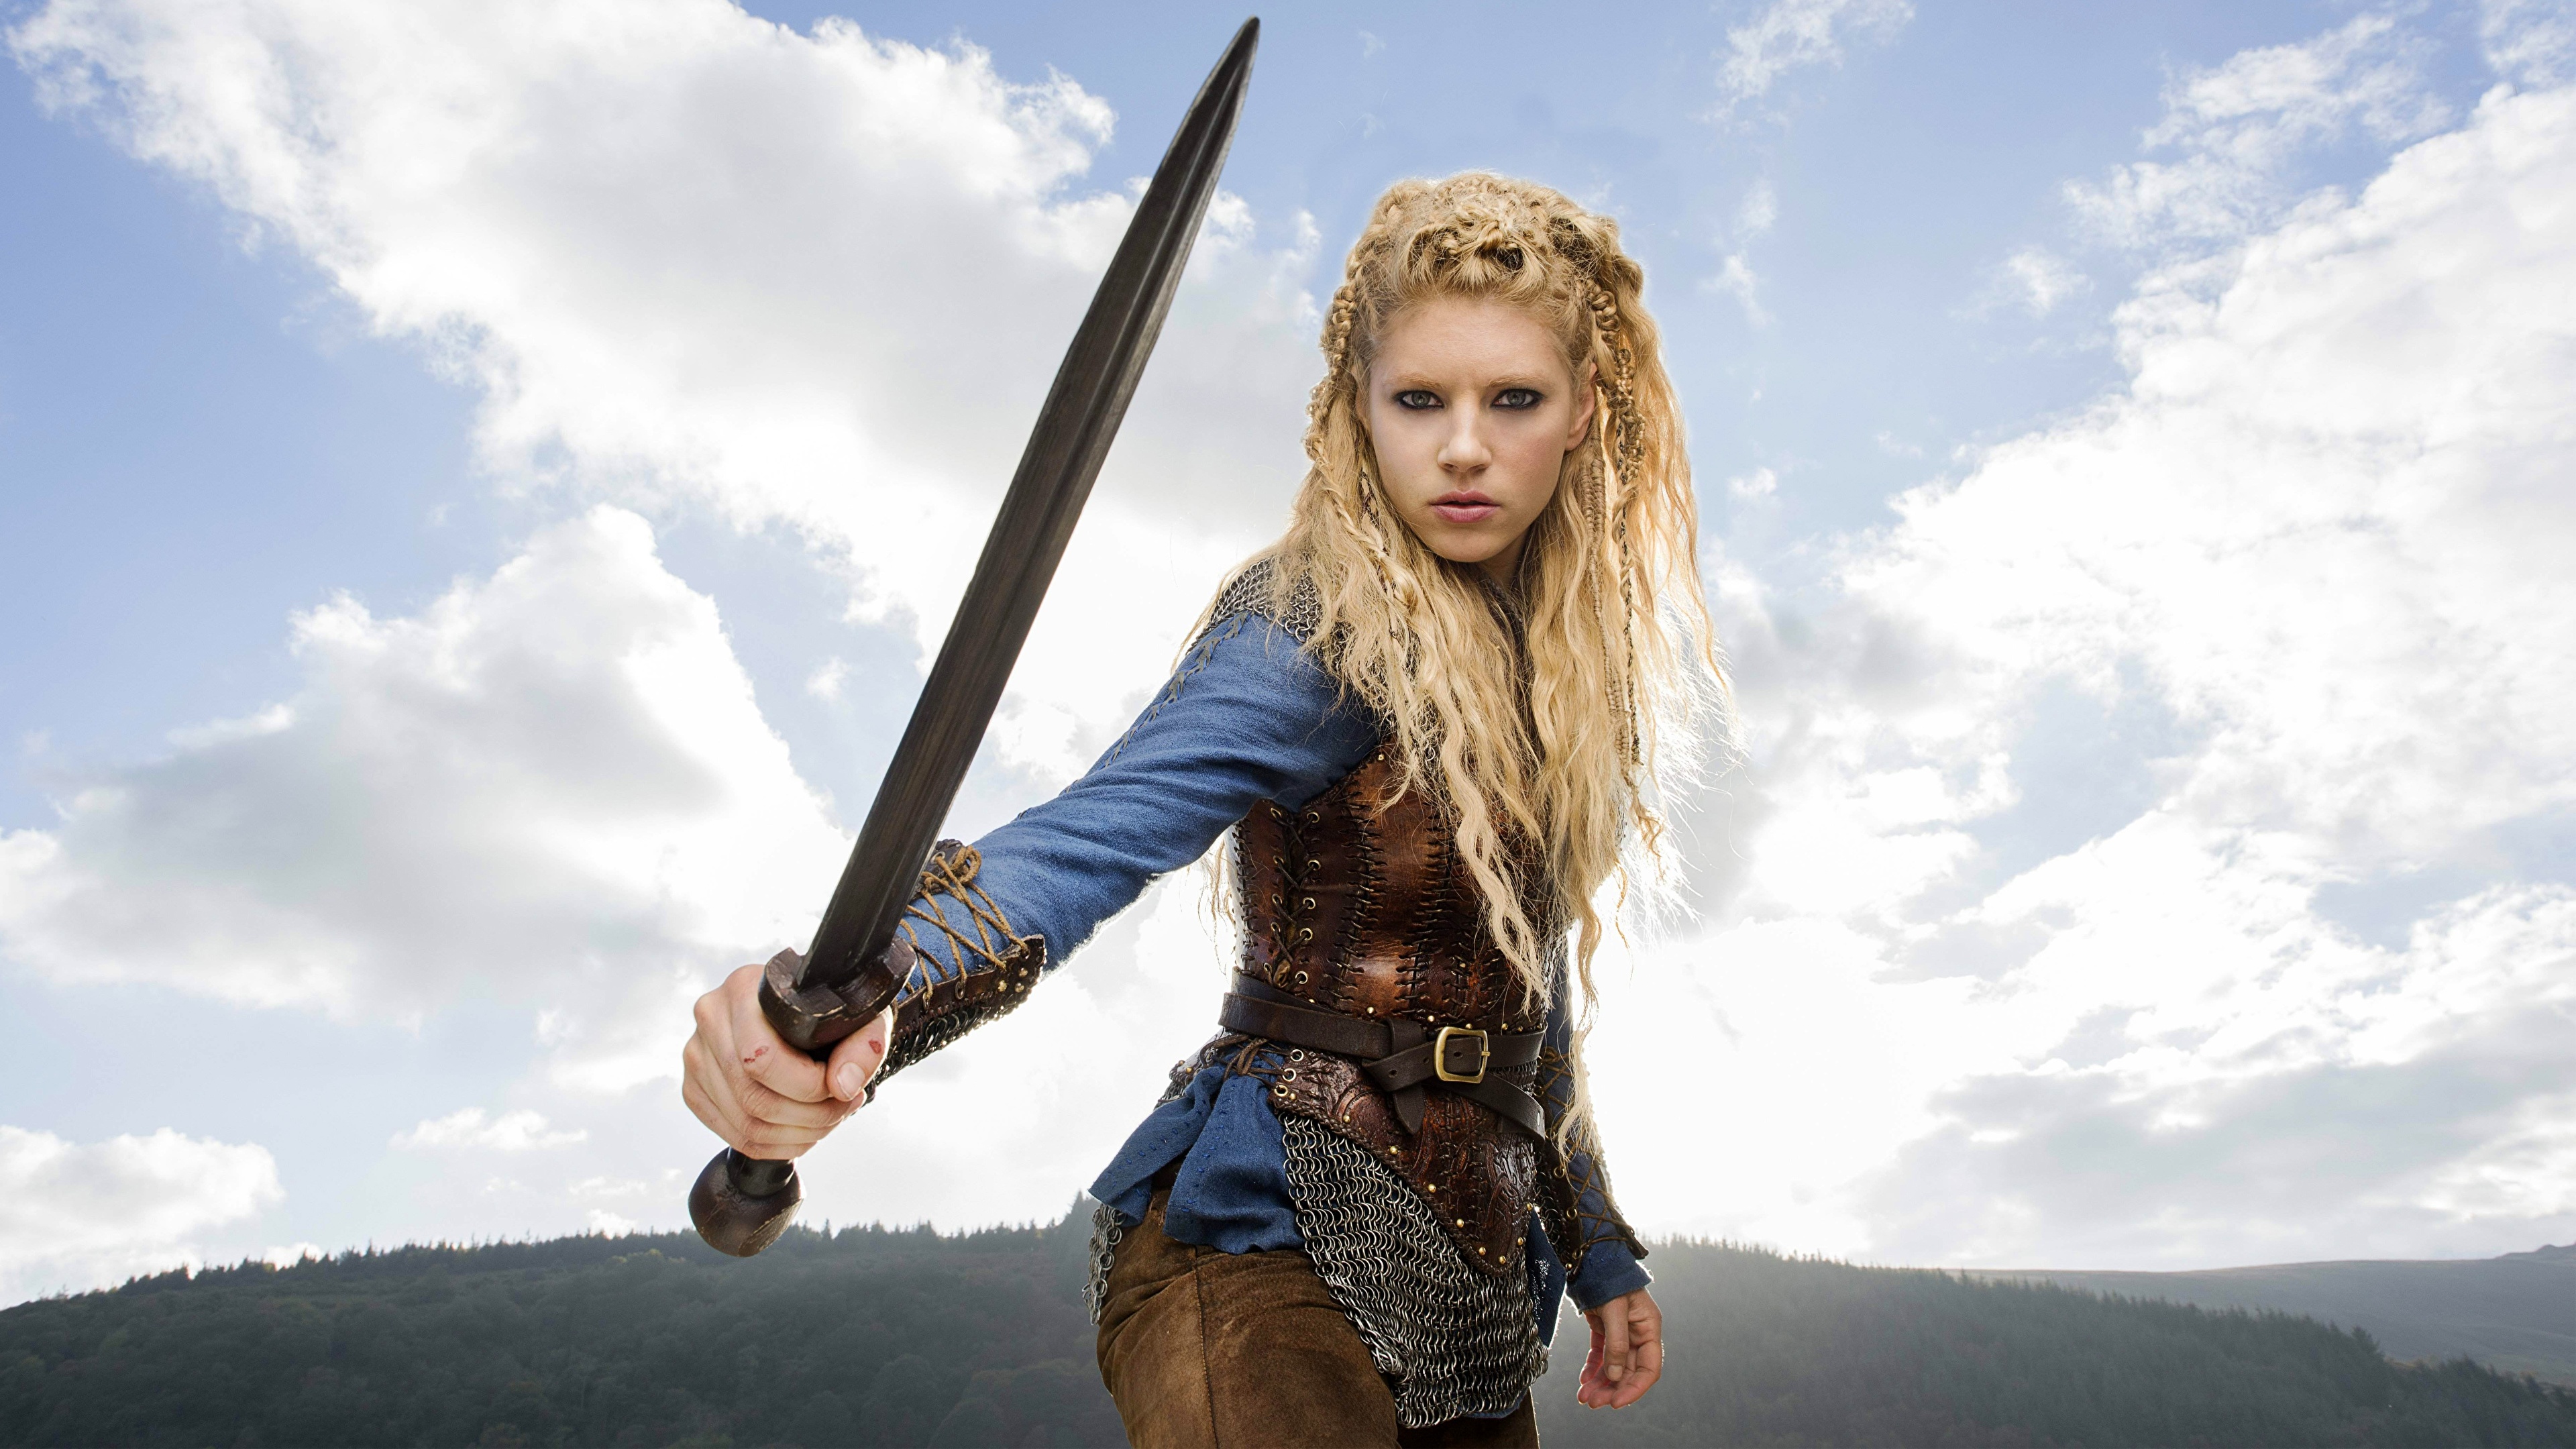 壁紙 3840x2160 Vikings Tv Series キャサリン ウィニック Lagertha 剣 ブロンドの女の子 映画 少女 有名人 ダウンロード 写真